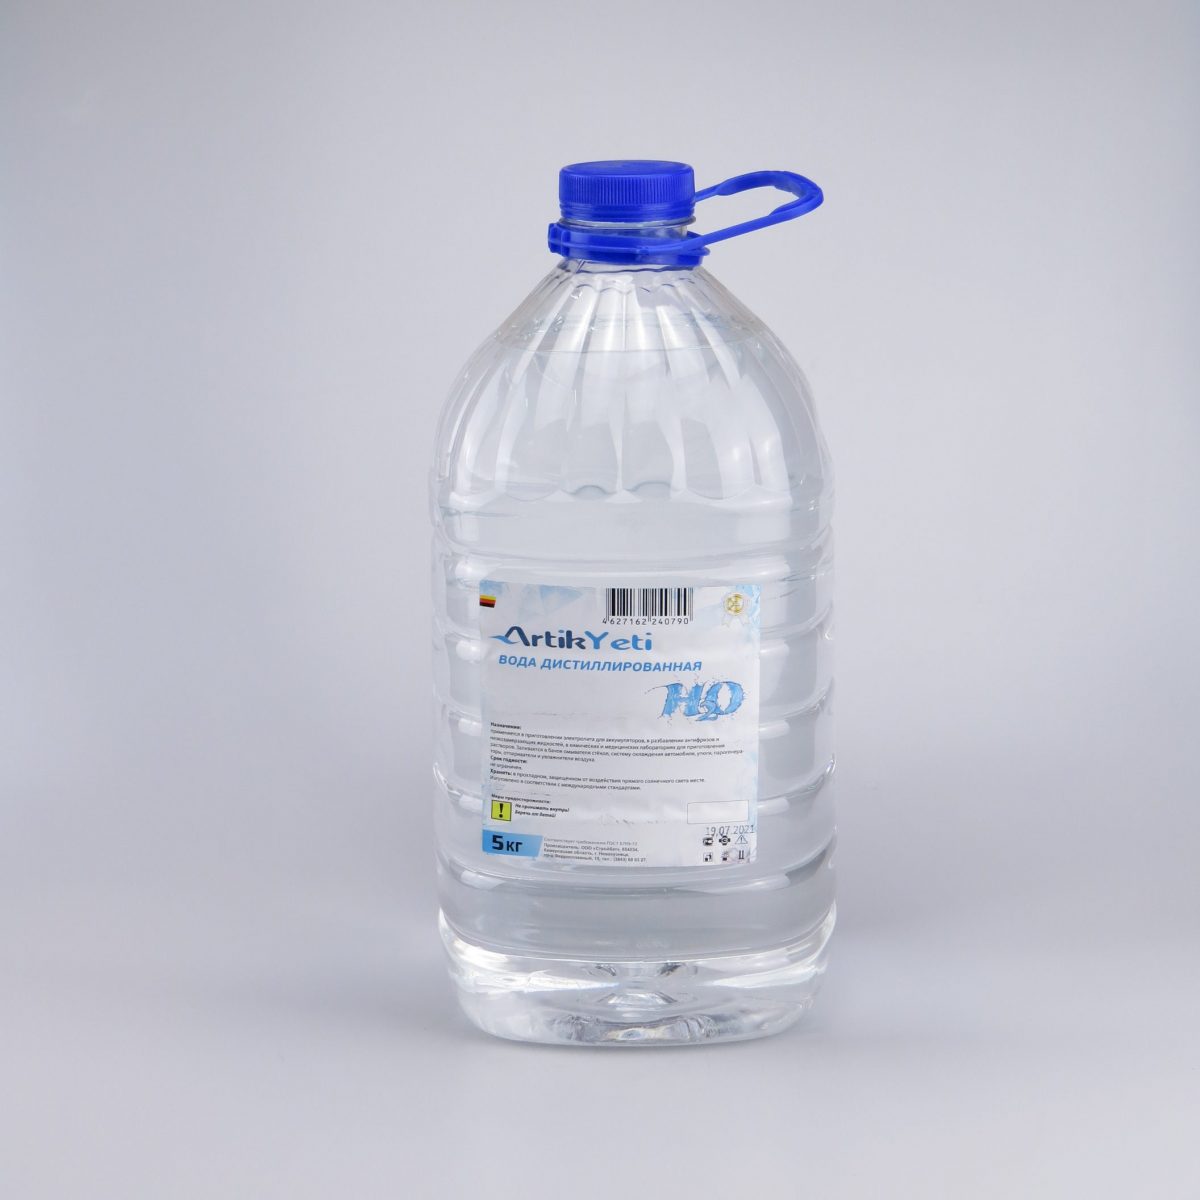 Вода дистиллированная "Artik Yeti" ПЭТ 5л- купить цена.